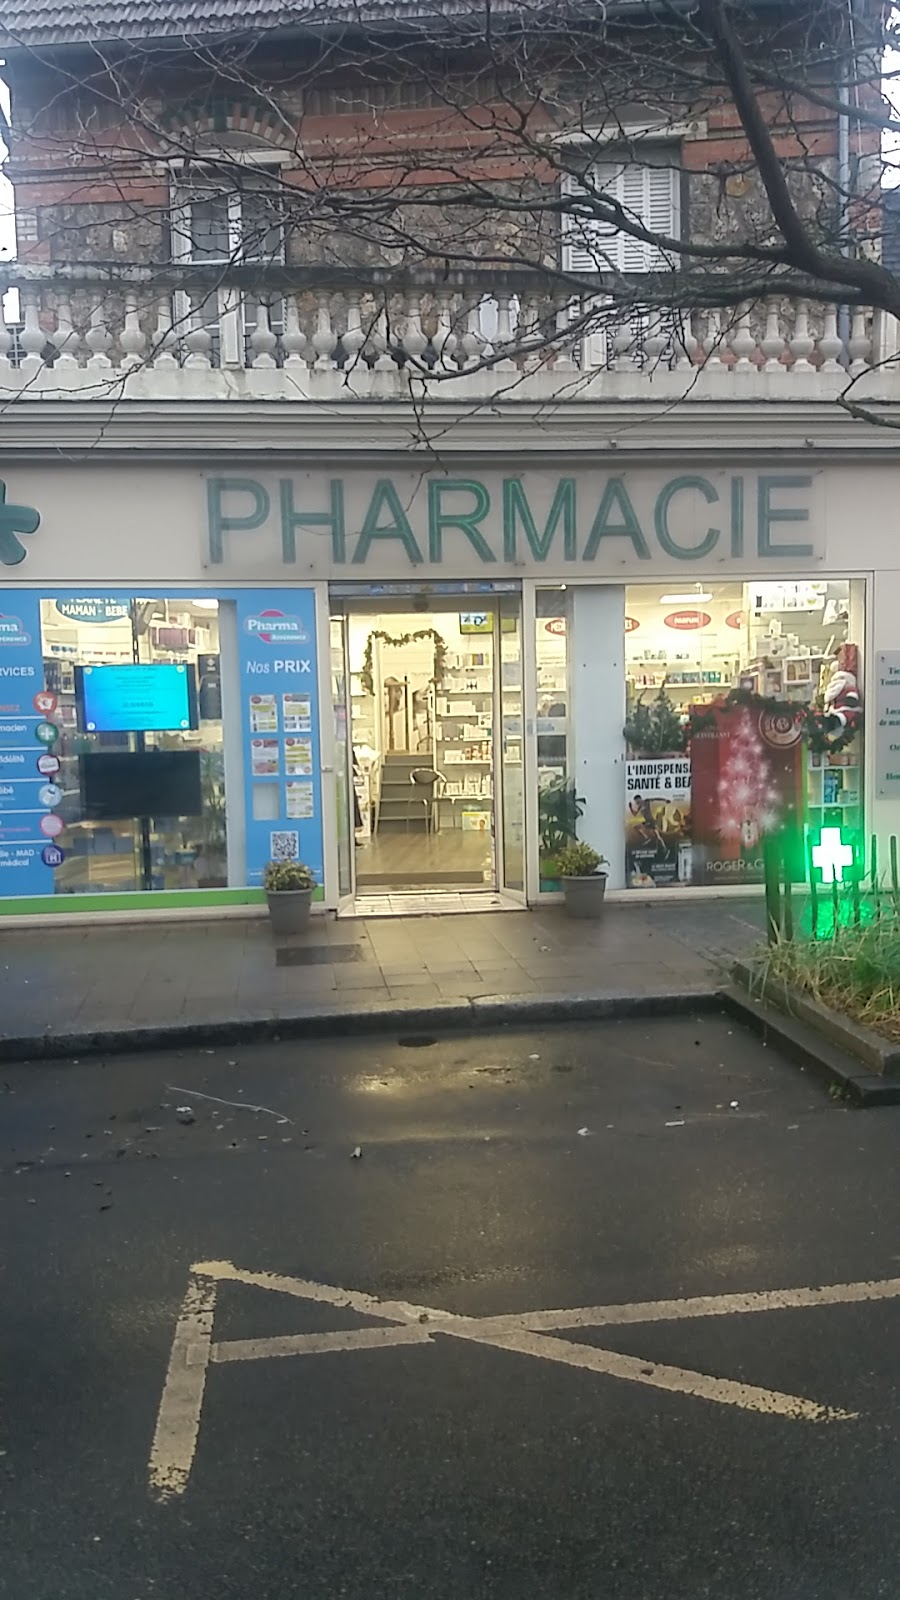 Pharmacie de la Place